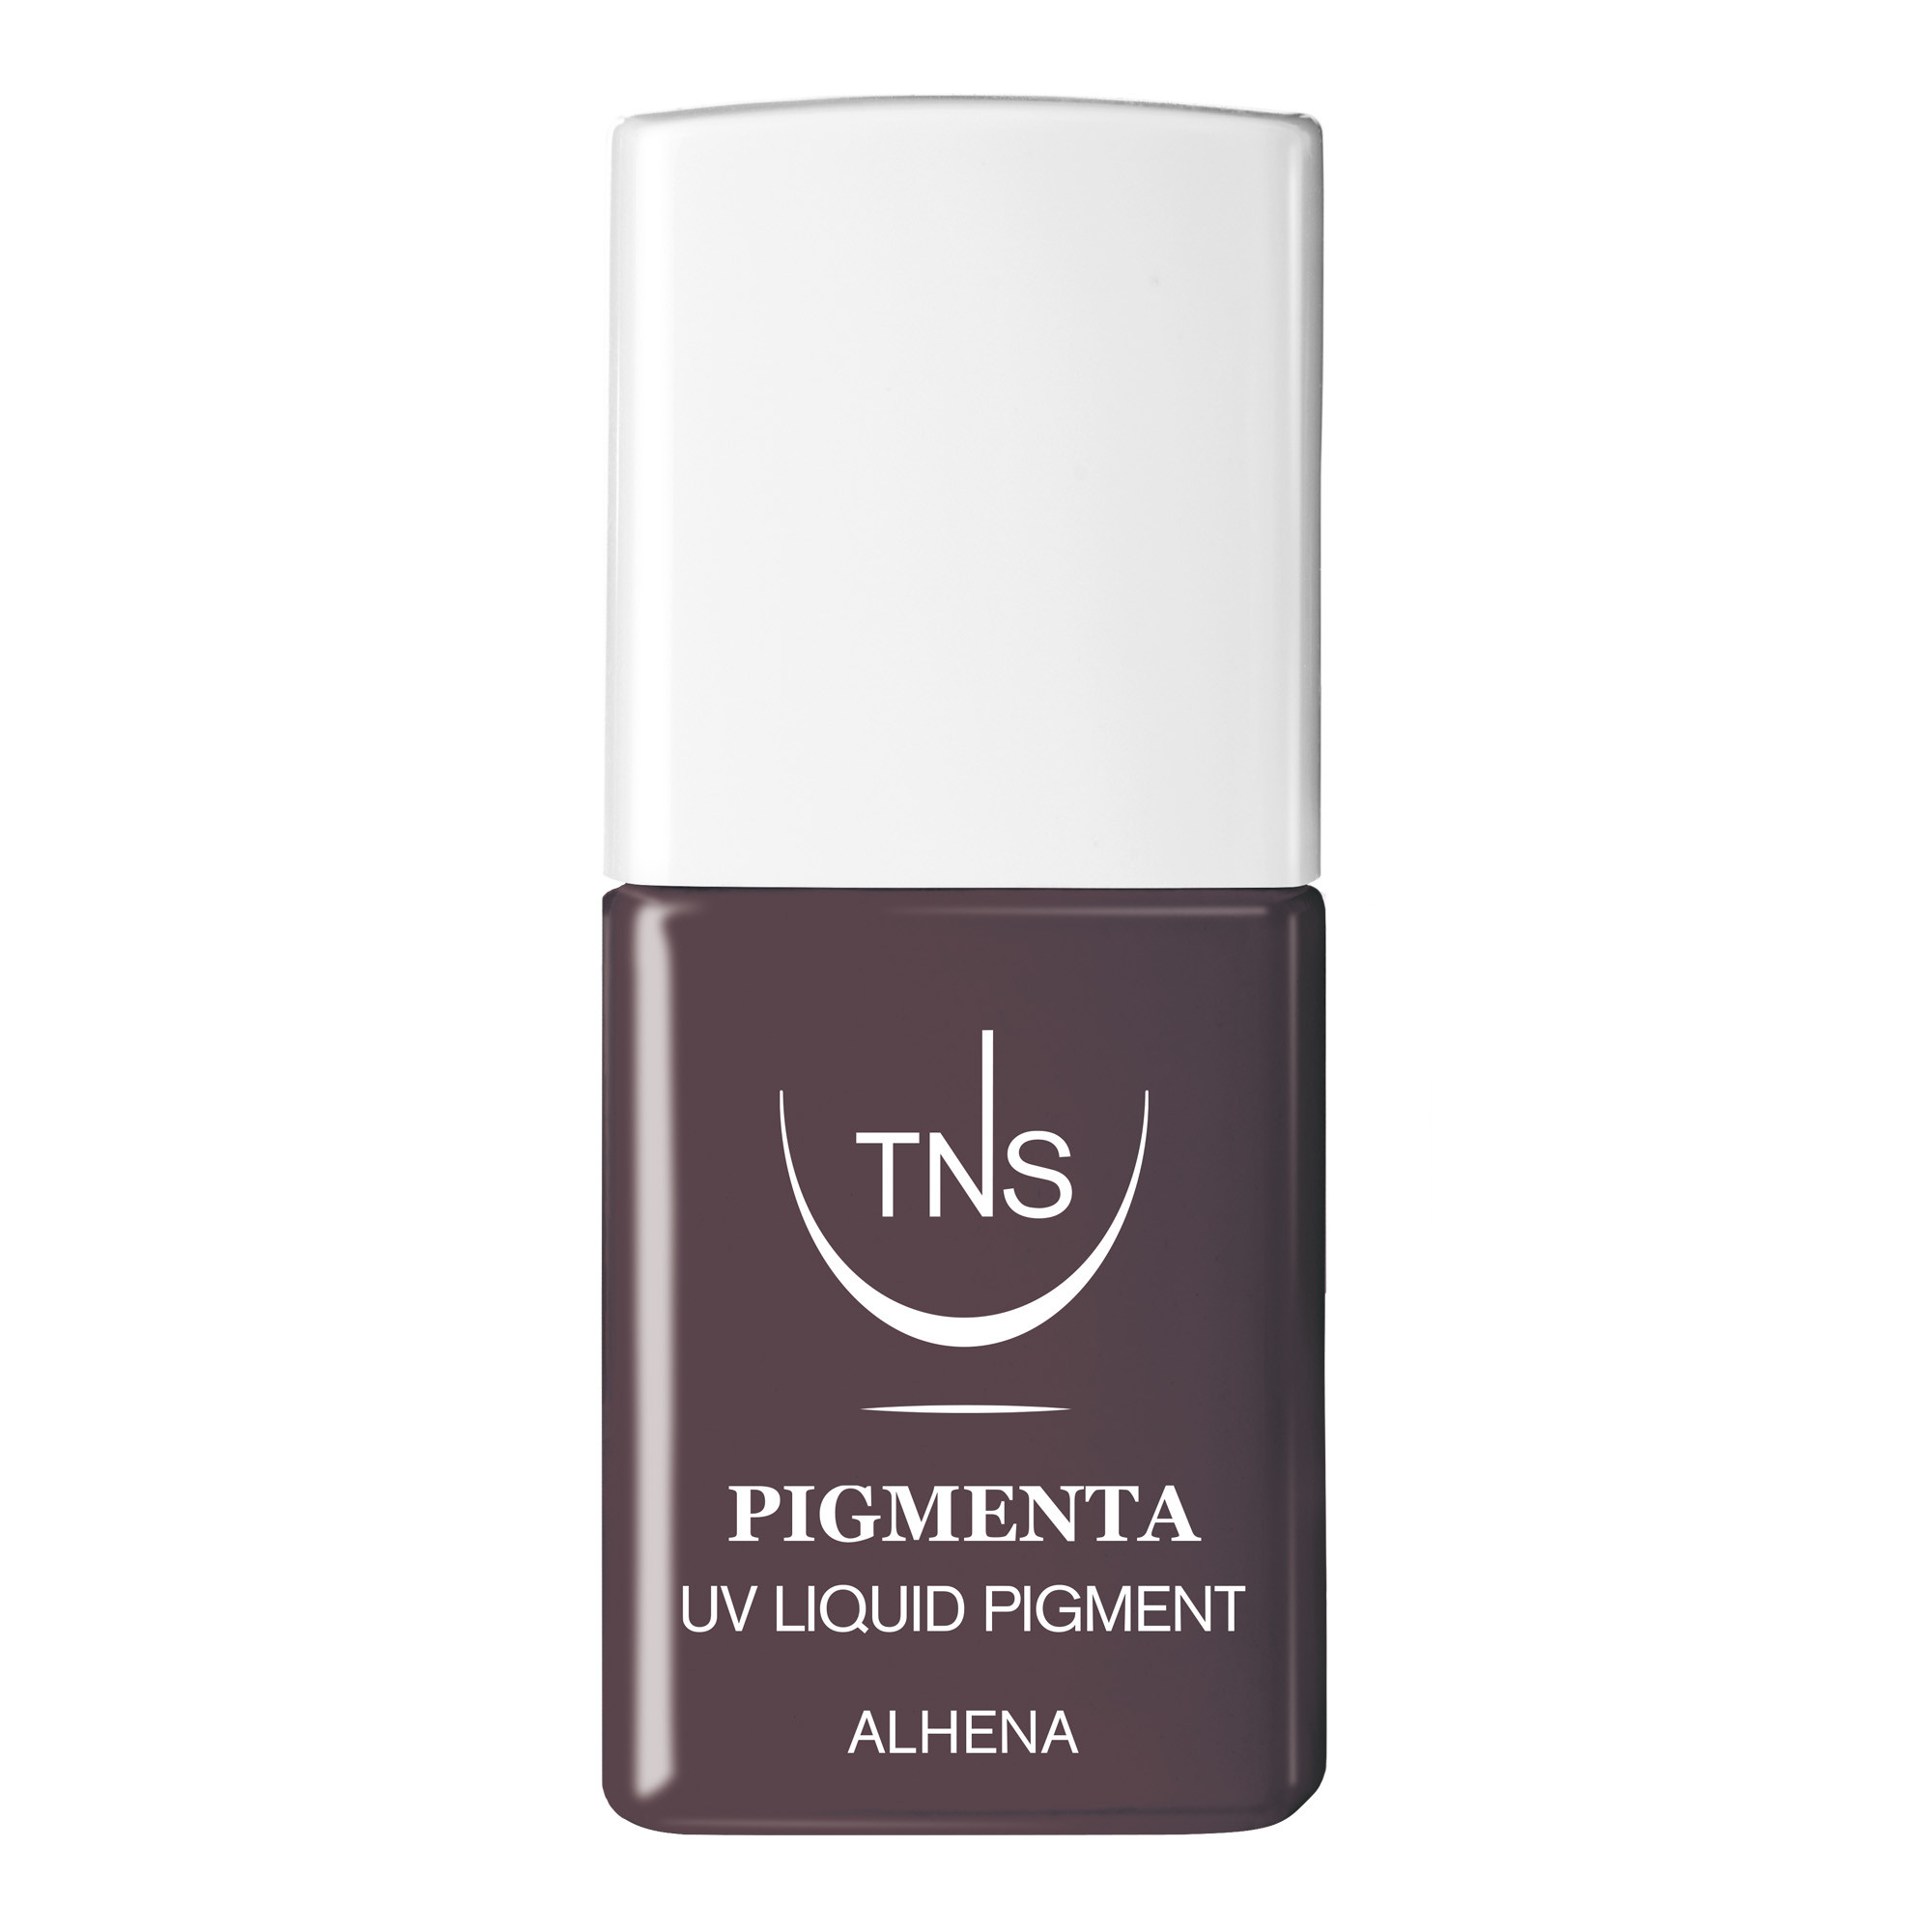 UV Flüssigpigment Alhena schlamm-braun 10 ml Pigmenta TNS